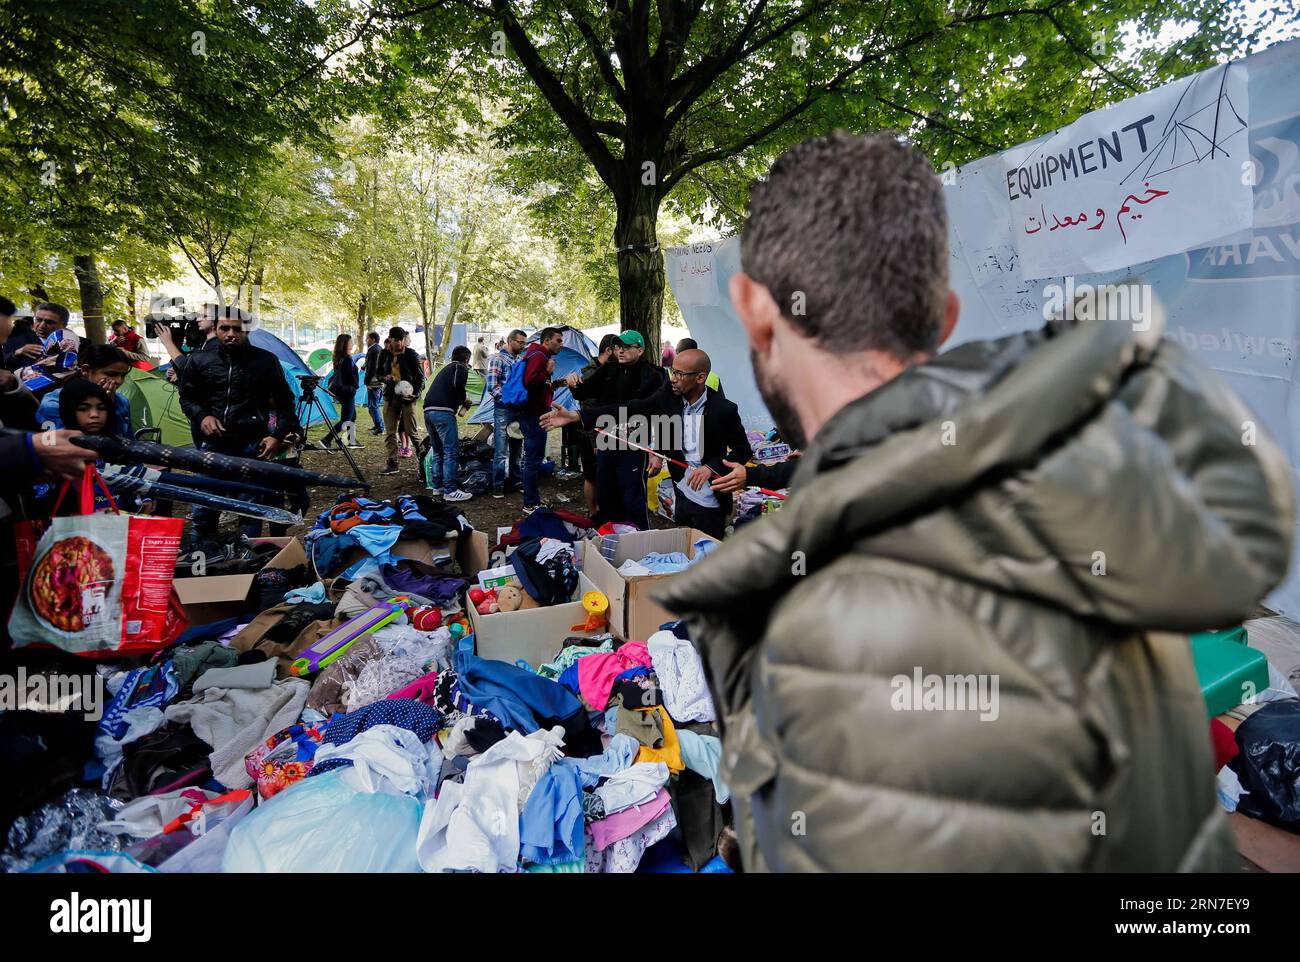 (150903) -- BRUXELLES, 3 septembre 2015 -- les demandeurs d'asile ramassent les vêtements donnés par les habitants dans un camp de fortune à l'extérieur du centre d'accueil des migrants à Bruxelles, Belgique, le 3 septembre 2015. Le nombre de réfugiés et de migrants traversant la Méditerranée cette année dépasse désormais les 300 000, selon le HCR, Agence des Nations Unies pour les réfugiés. Zhou Lei) BELGIQUE-EUROPE-MIGRANTS-DEMANDEURS D'ASILE ?? PUBLICATIONxNOTxINxCHN 150903 Bruxelles sept 3 2015 les demandeurs d'asile collectent les vêtements donnés par les habitants DANS un camp de fortune à l'extérieur du Centre d'accueil des immigrants à Bruxelles Belgique LE 3 2015 septembre le nombre de réfugiés et Banque D'Images